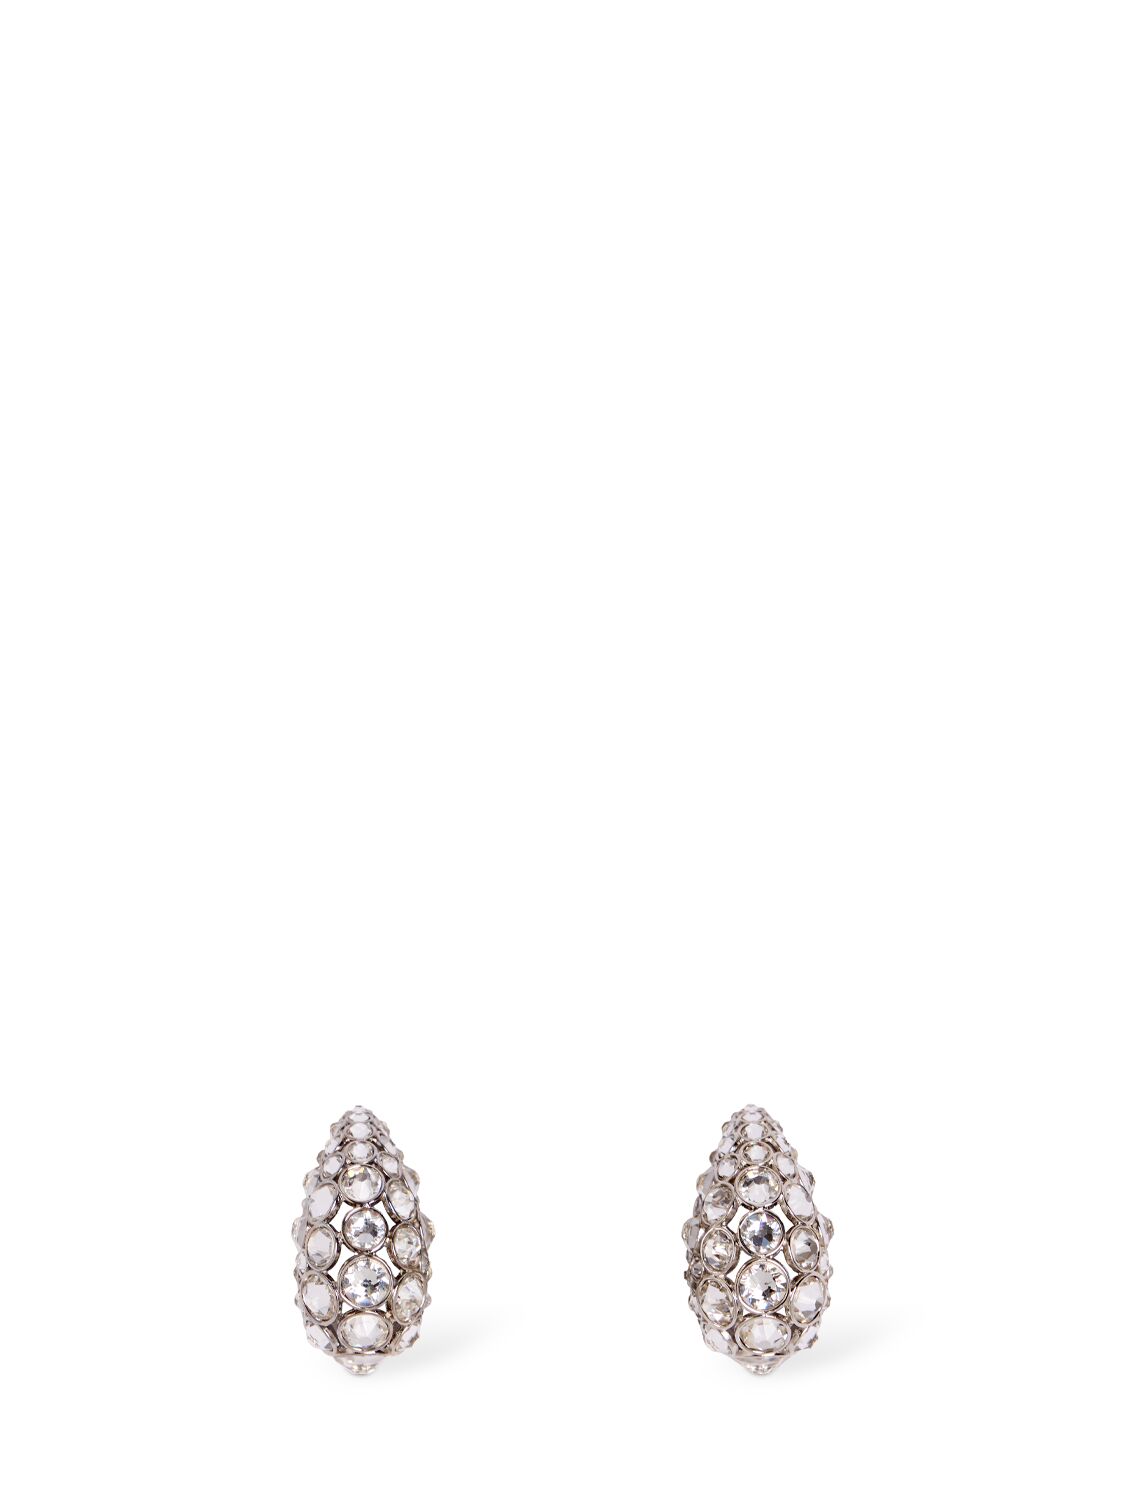 Pineapple Crystal Stud Earrings